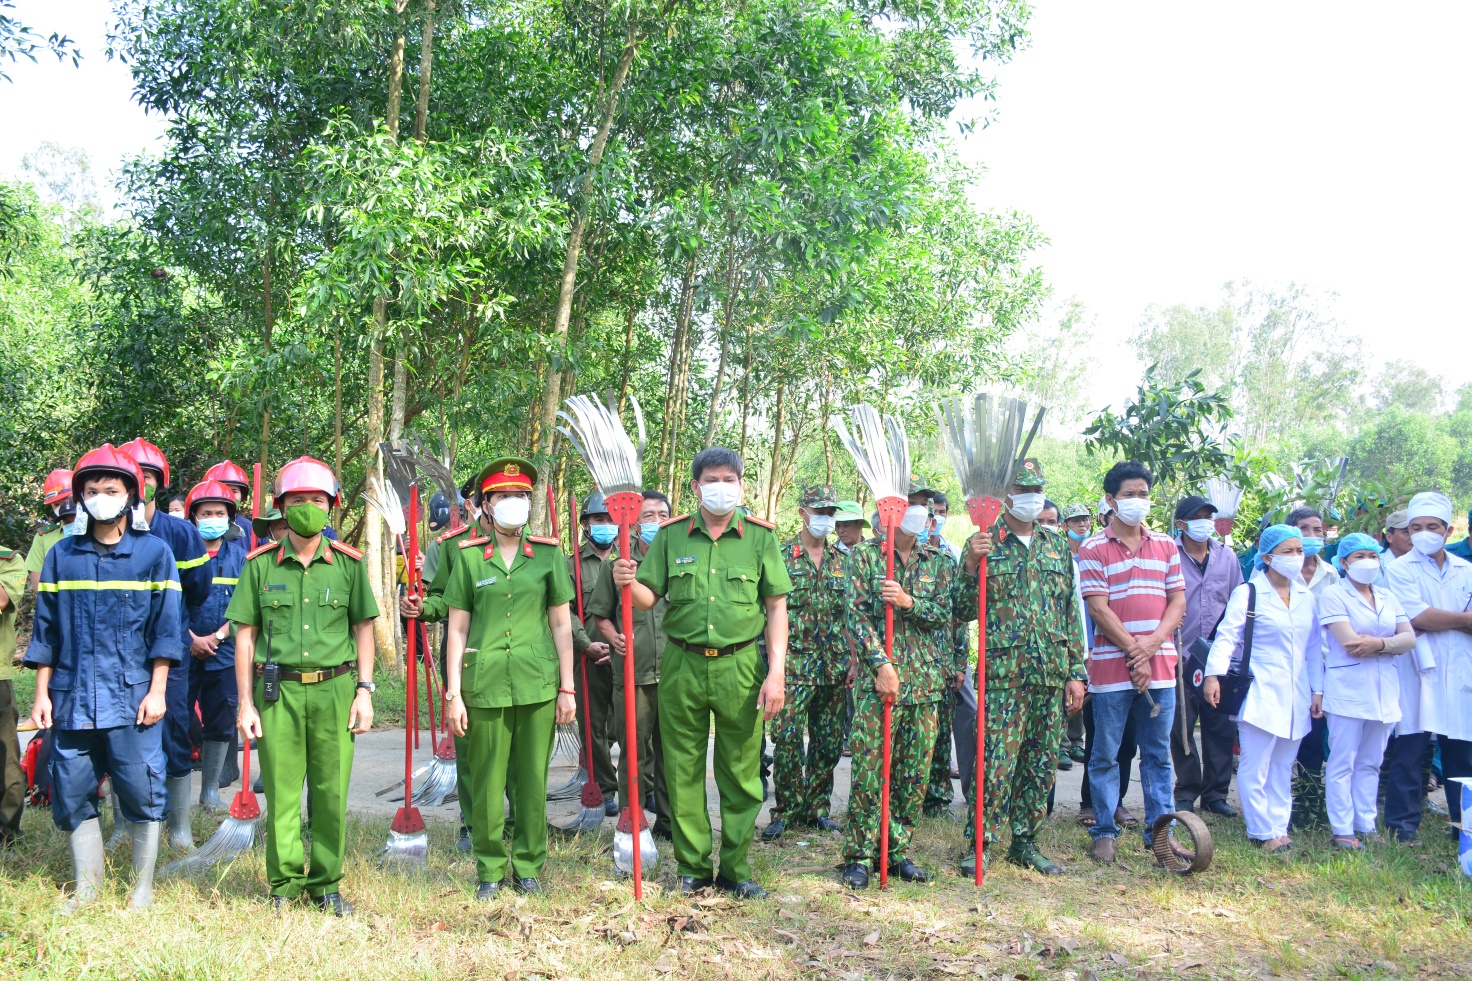 UBND xã Tịnh Sơn diễn tập chữa cháy rừng cấp xã năm 2022